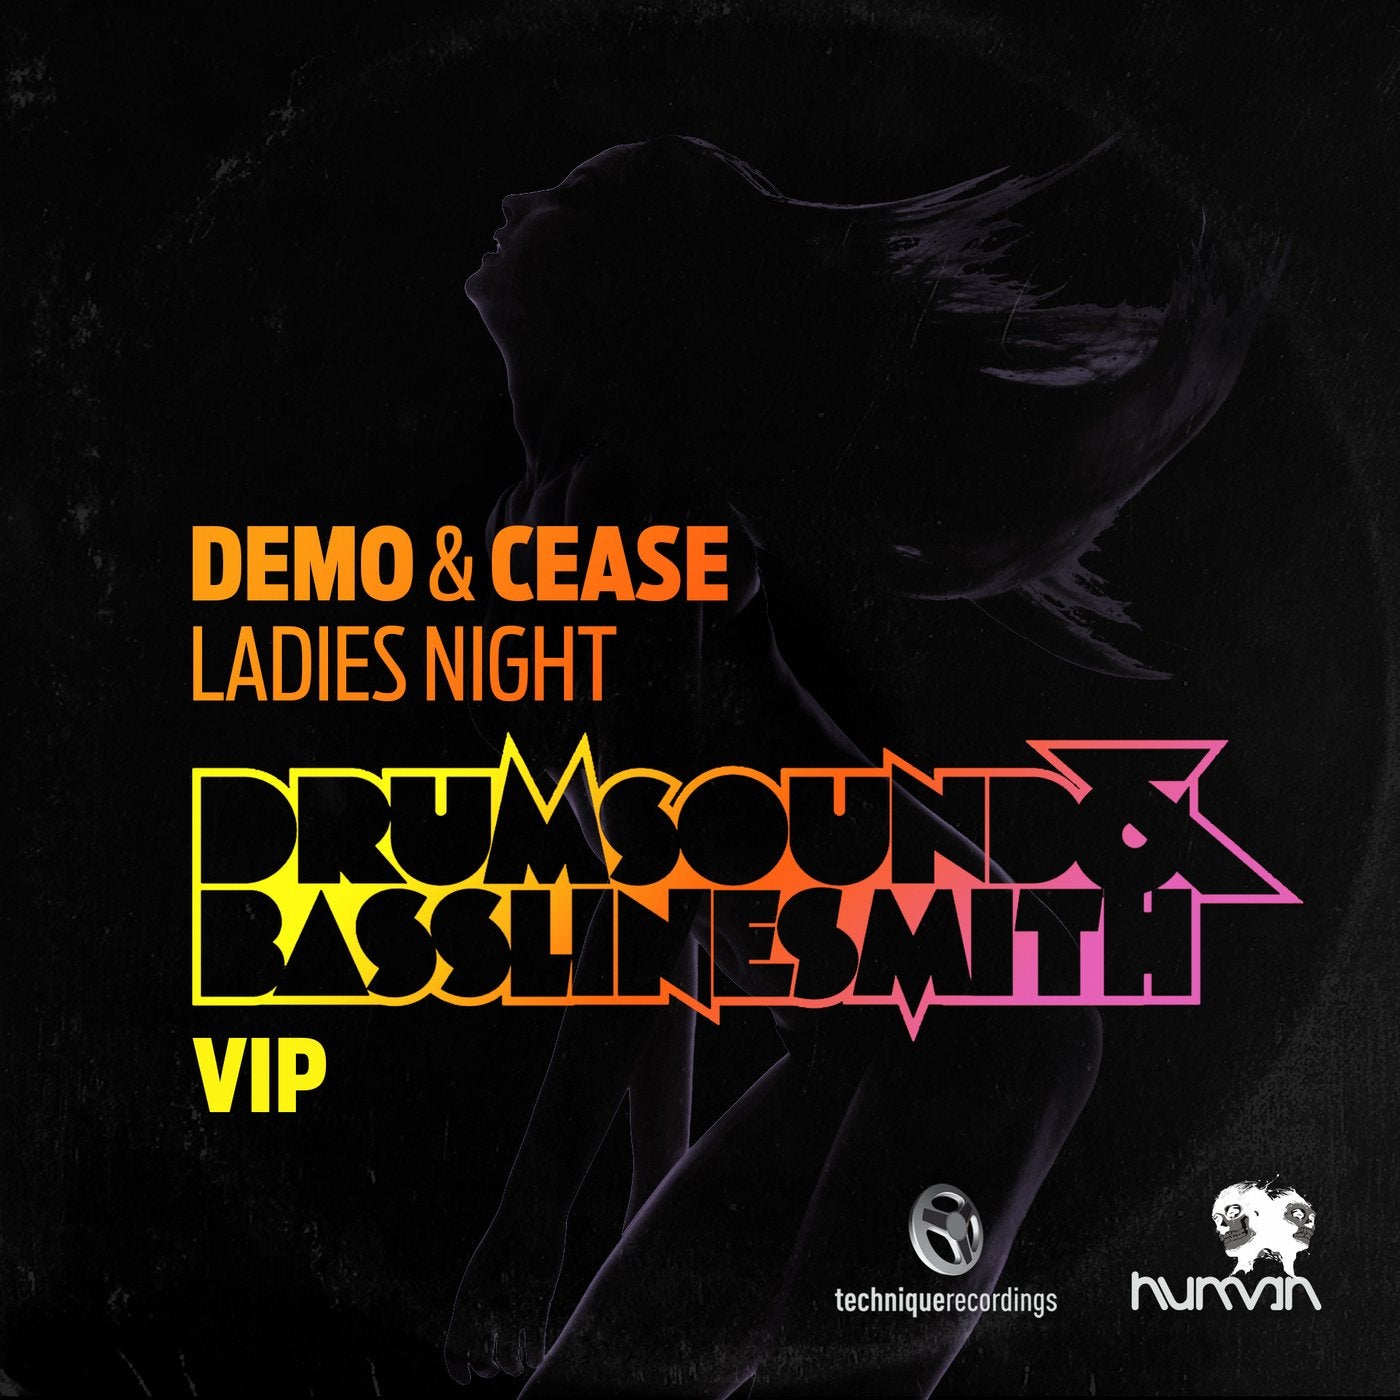 Demo & Cease - Ladies Night - Drumsound & Bassline Smith VIP